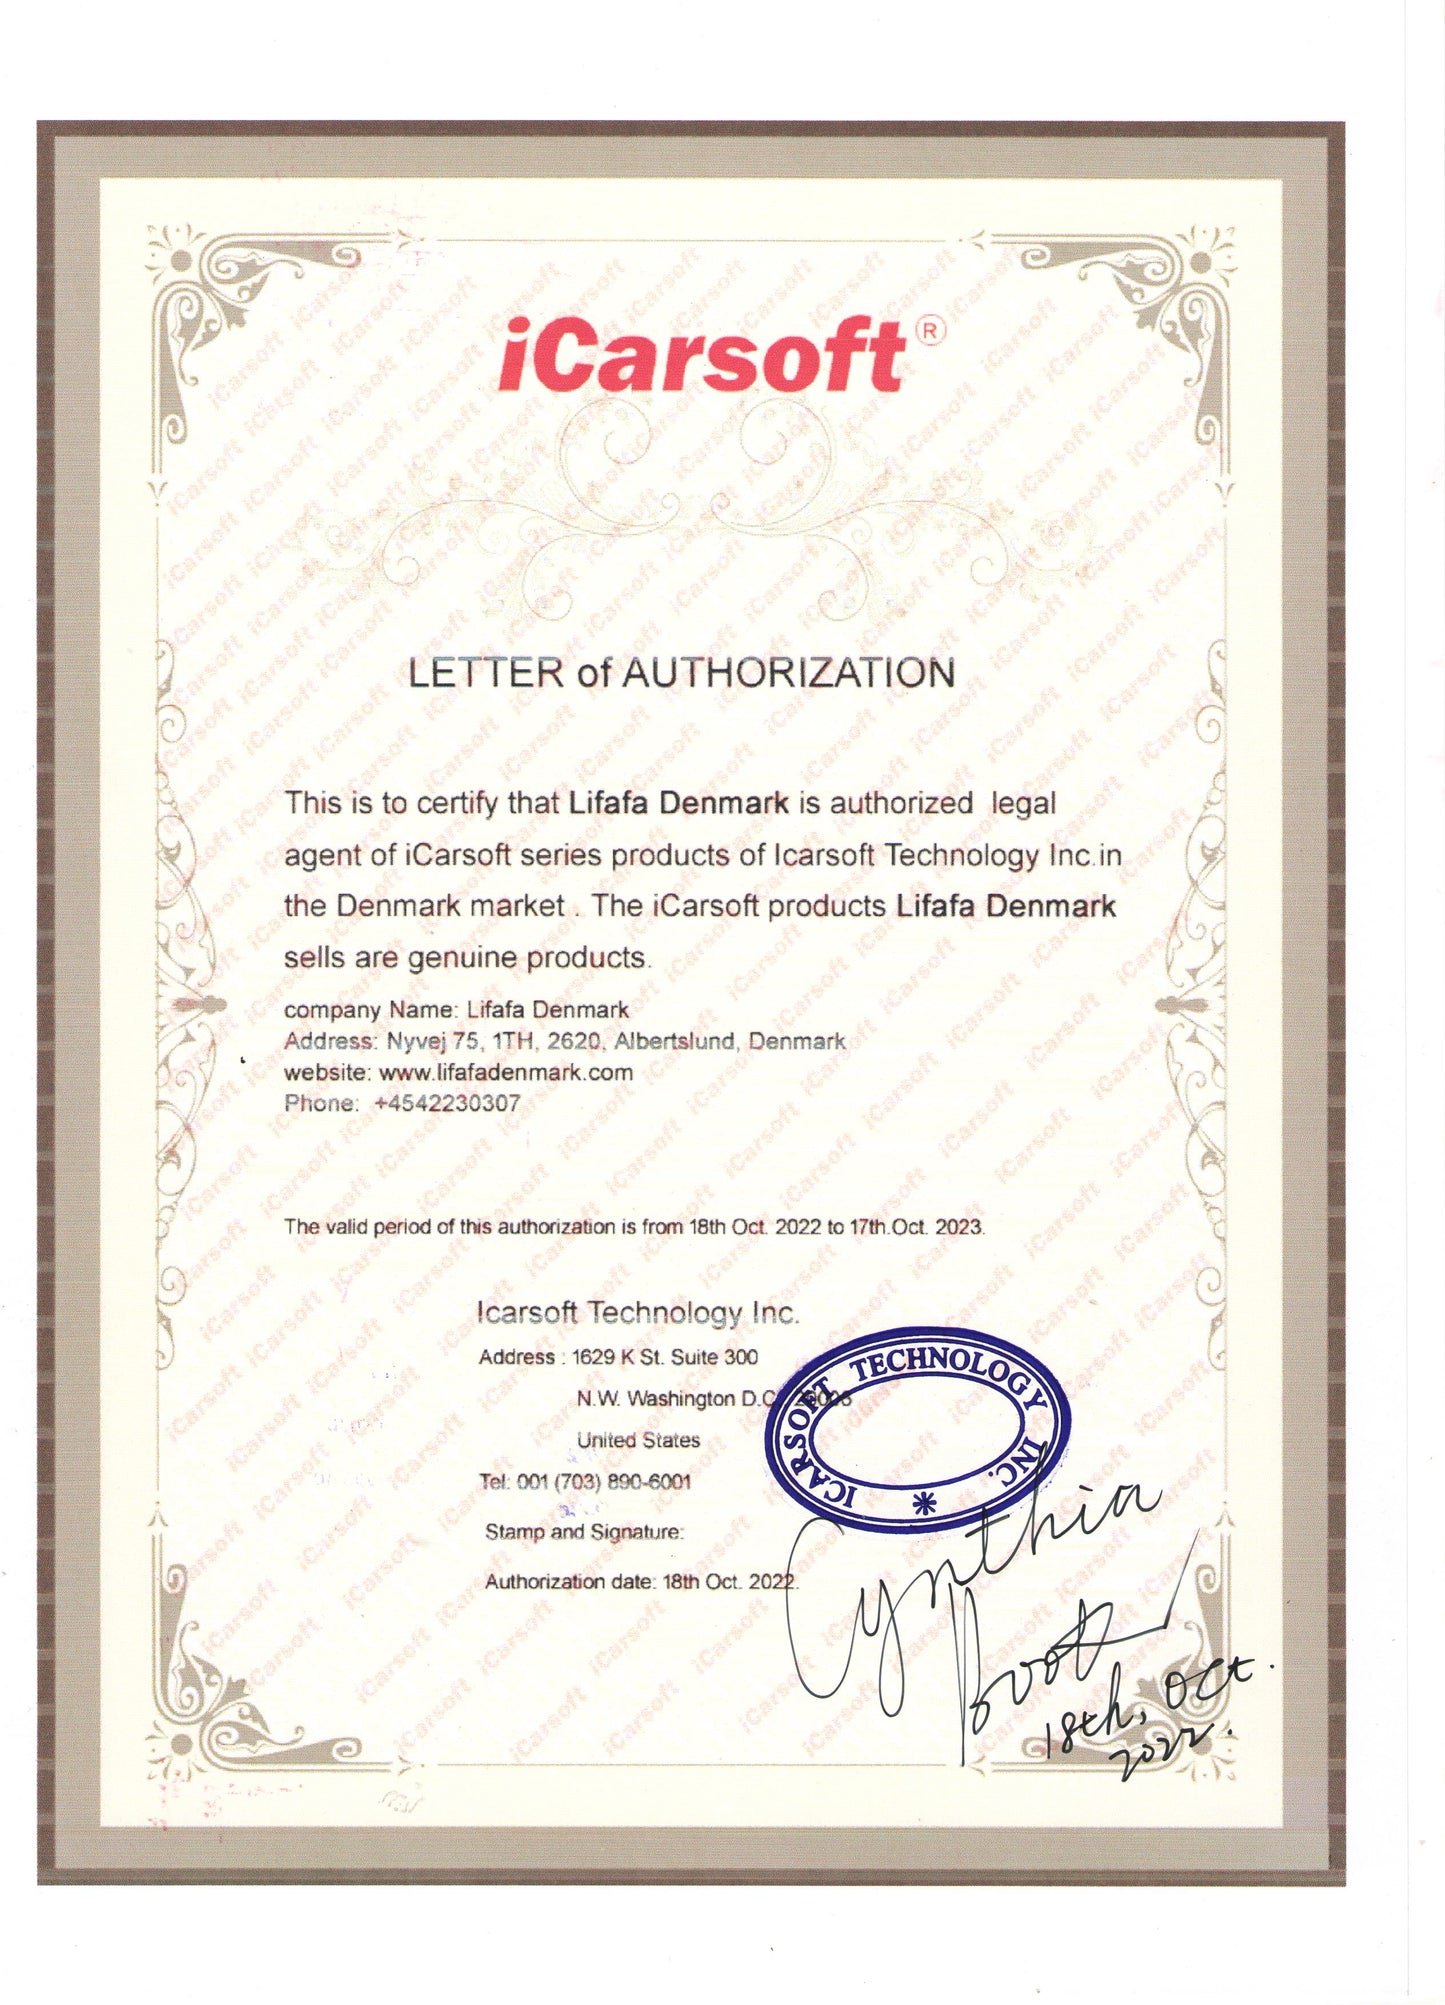 Latest Version Of iCarsoft LR V2.0 OBD2 Diagnostic Tool For Land Rover, Jaguar - Lifafa Denmark